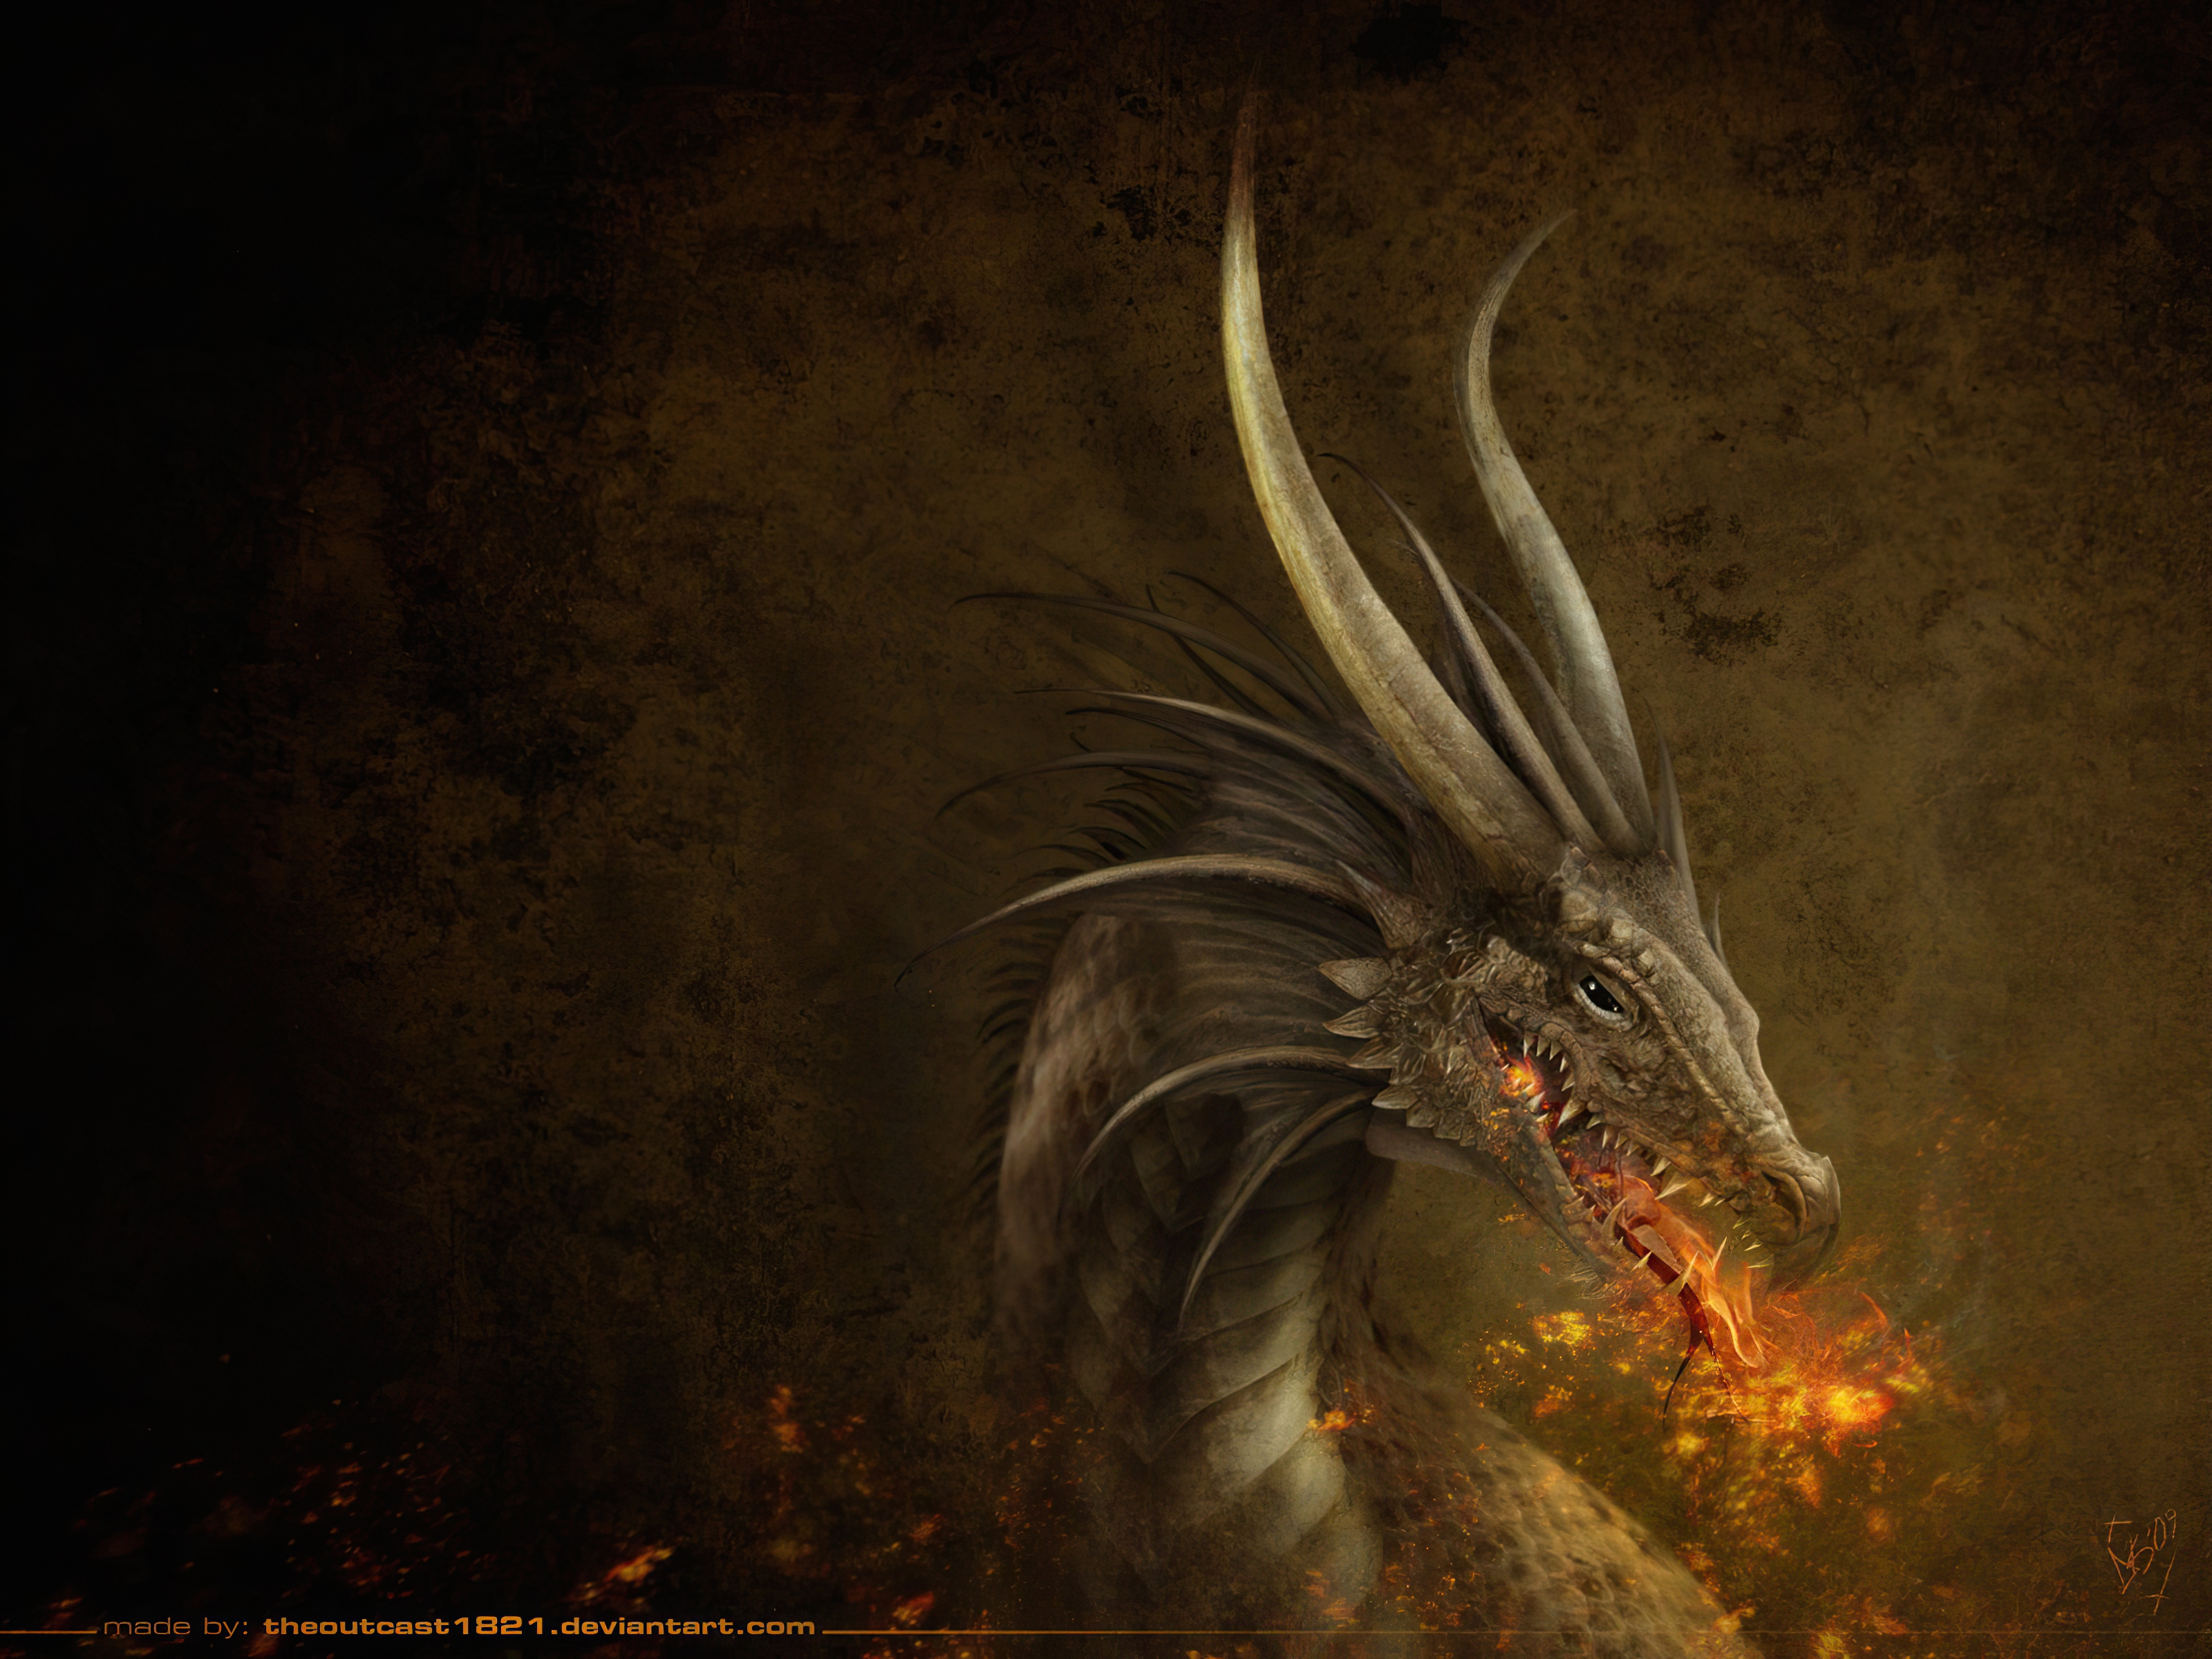 Descarga gratuita de fondo de pantalla para móvil de Fantasía, Dragón, Cuernos, Fuego.